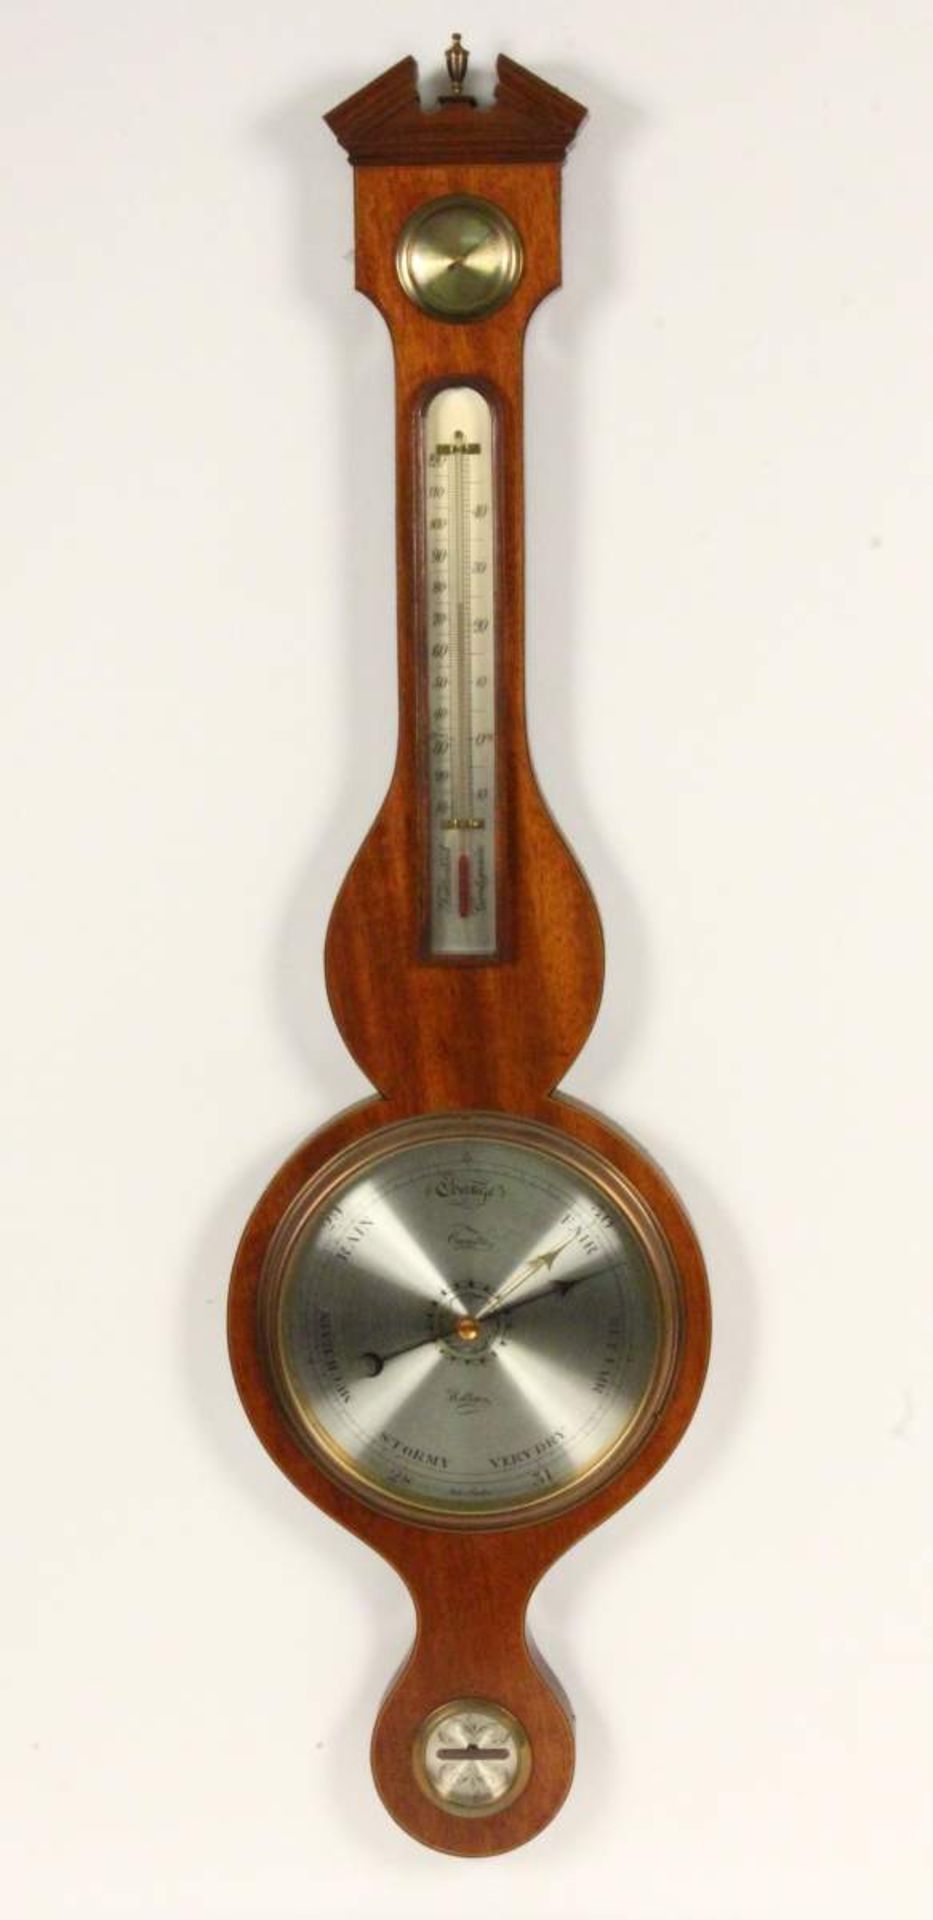 ENGLISCHES BAROMETERum 1900 Wetterstation mit Thermometer, Barometer und Hygrometer. Mahagoni. Bez.: